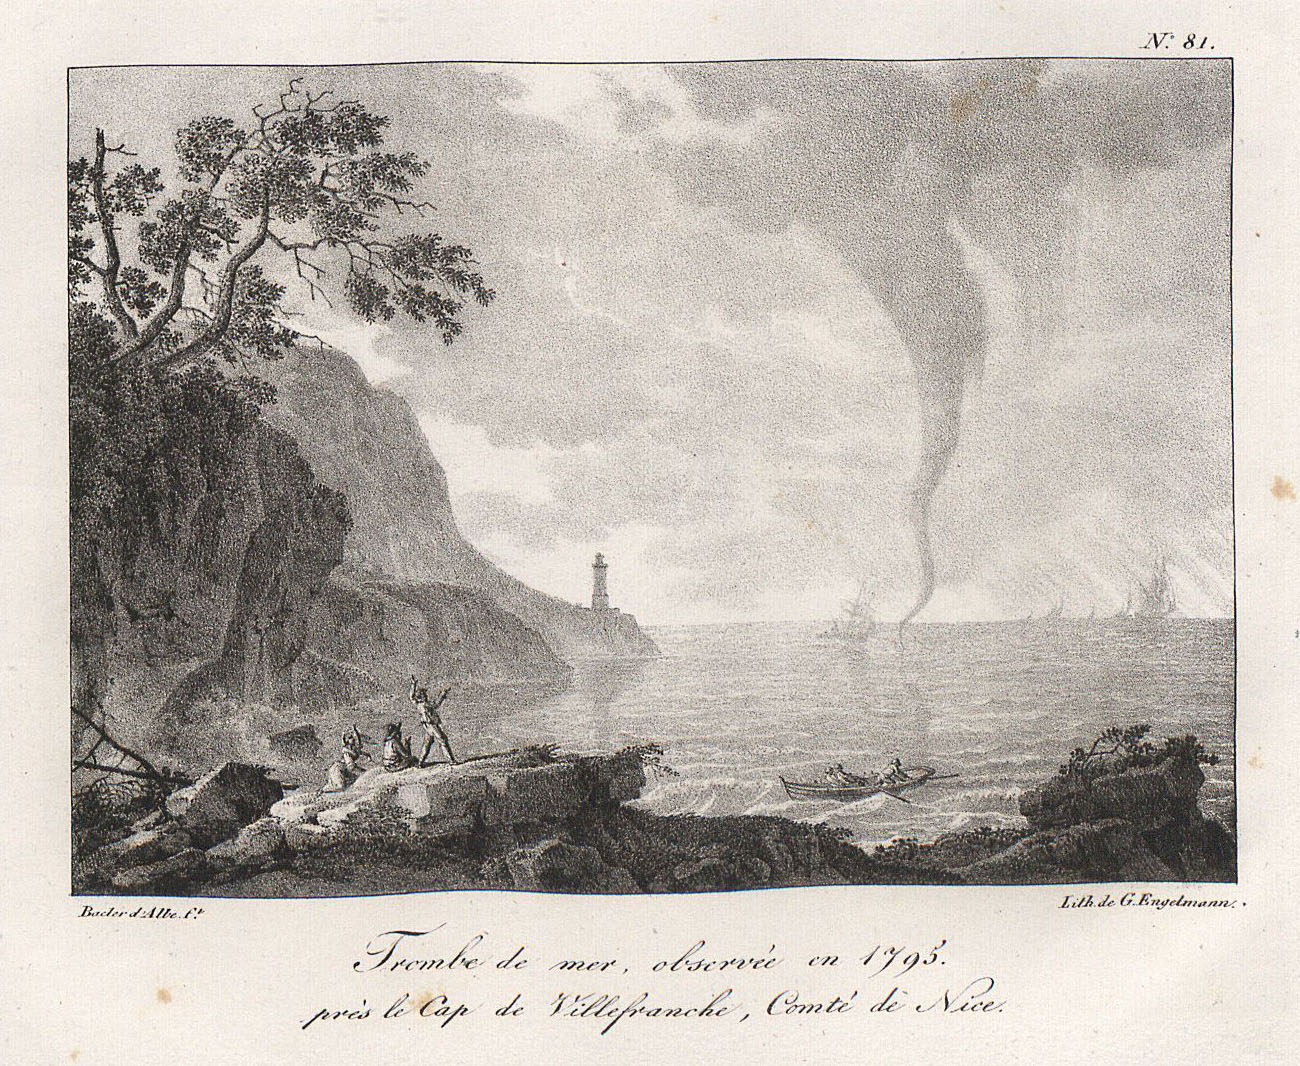 Trombe de mer, observée en 1795. près le Cap de Villefranche, Comté de Nice.